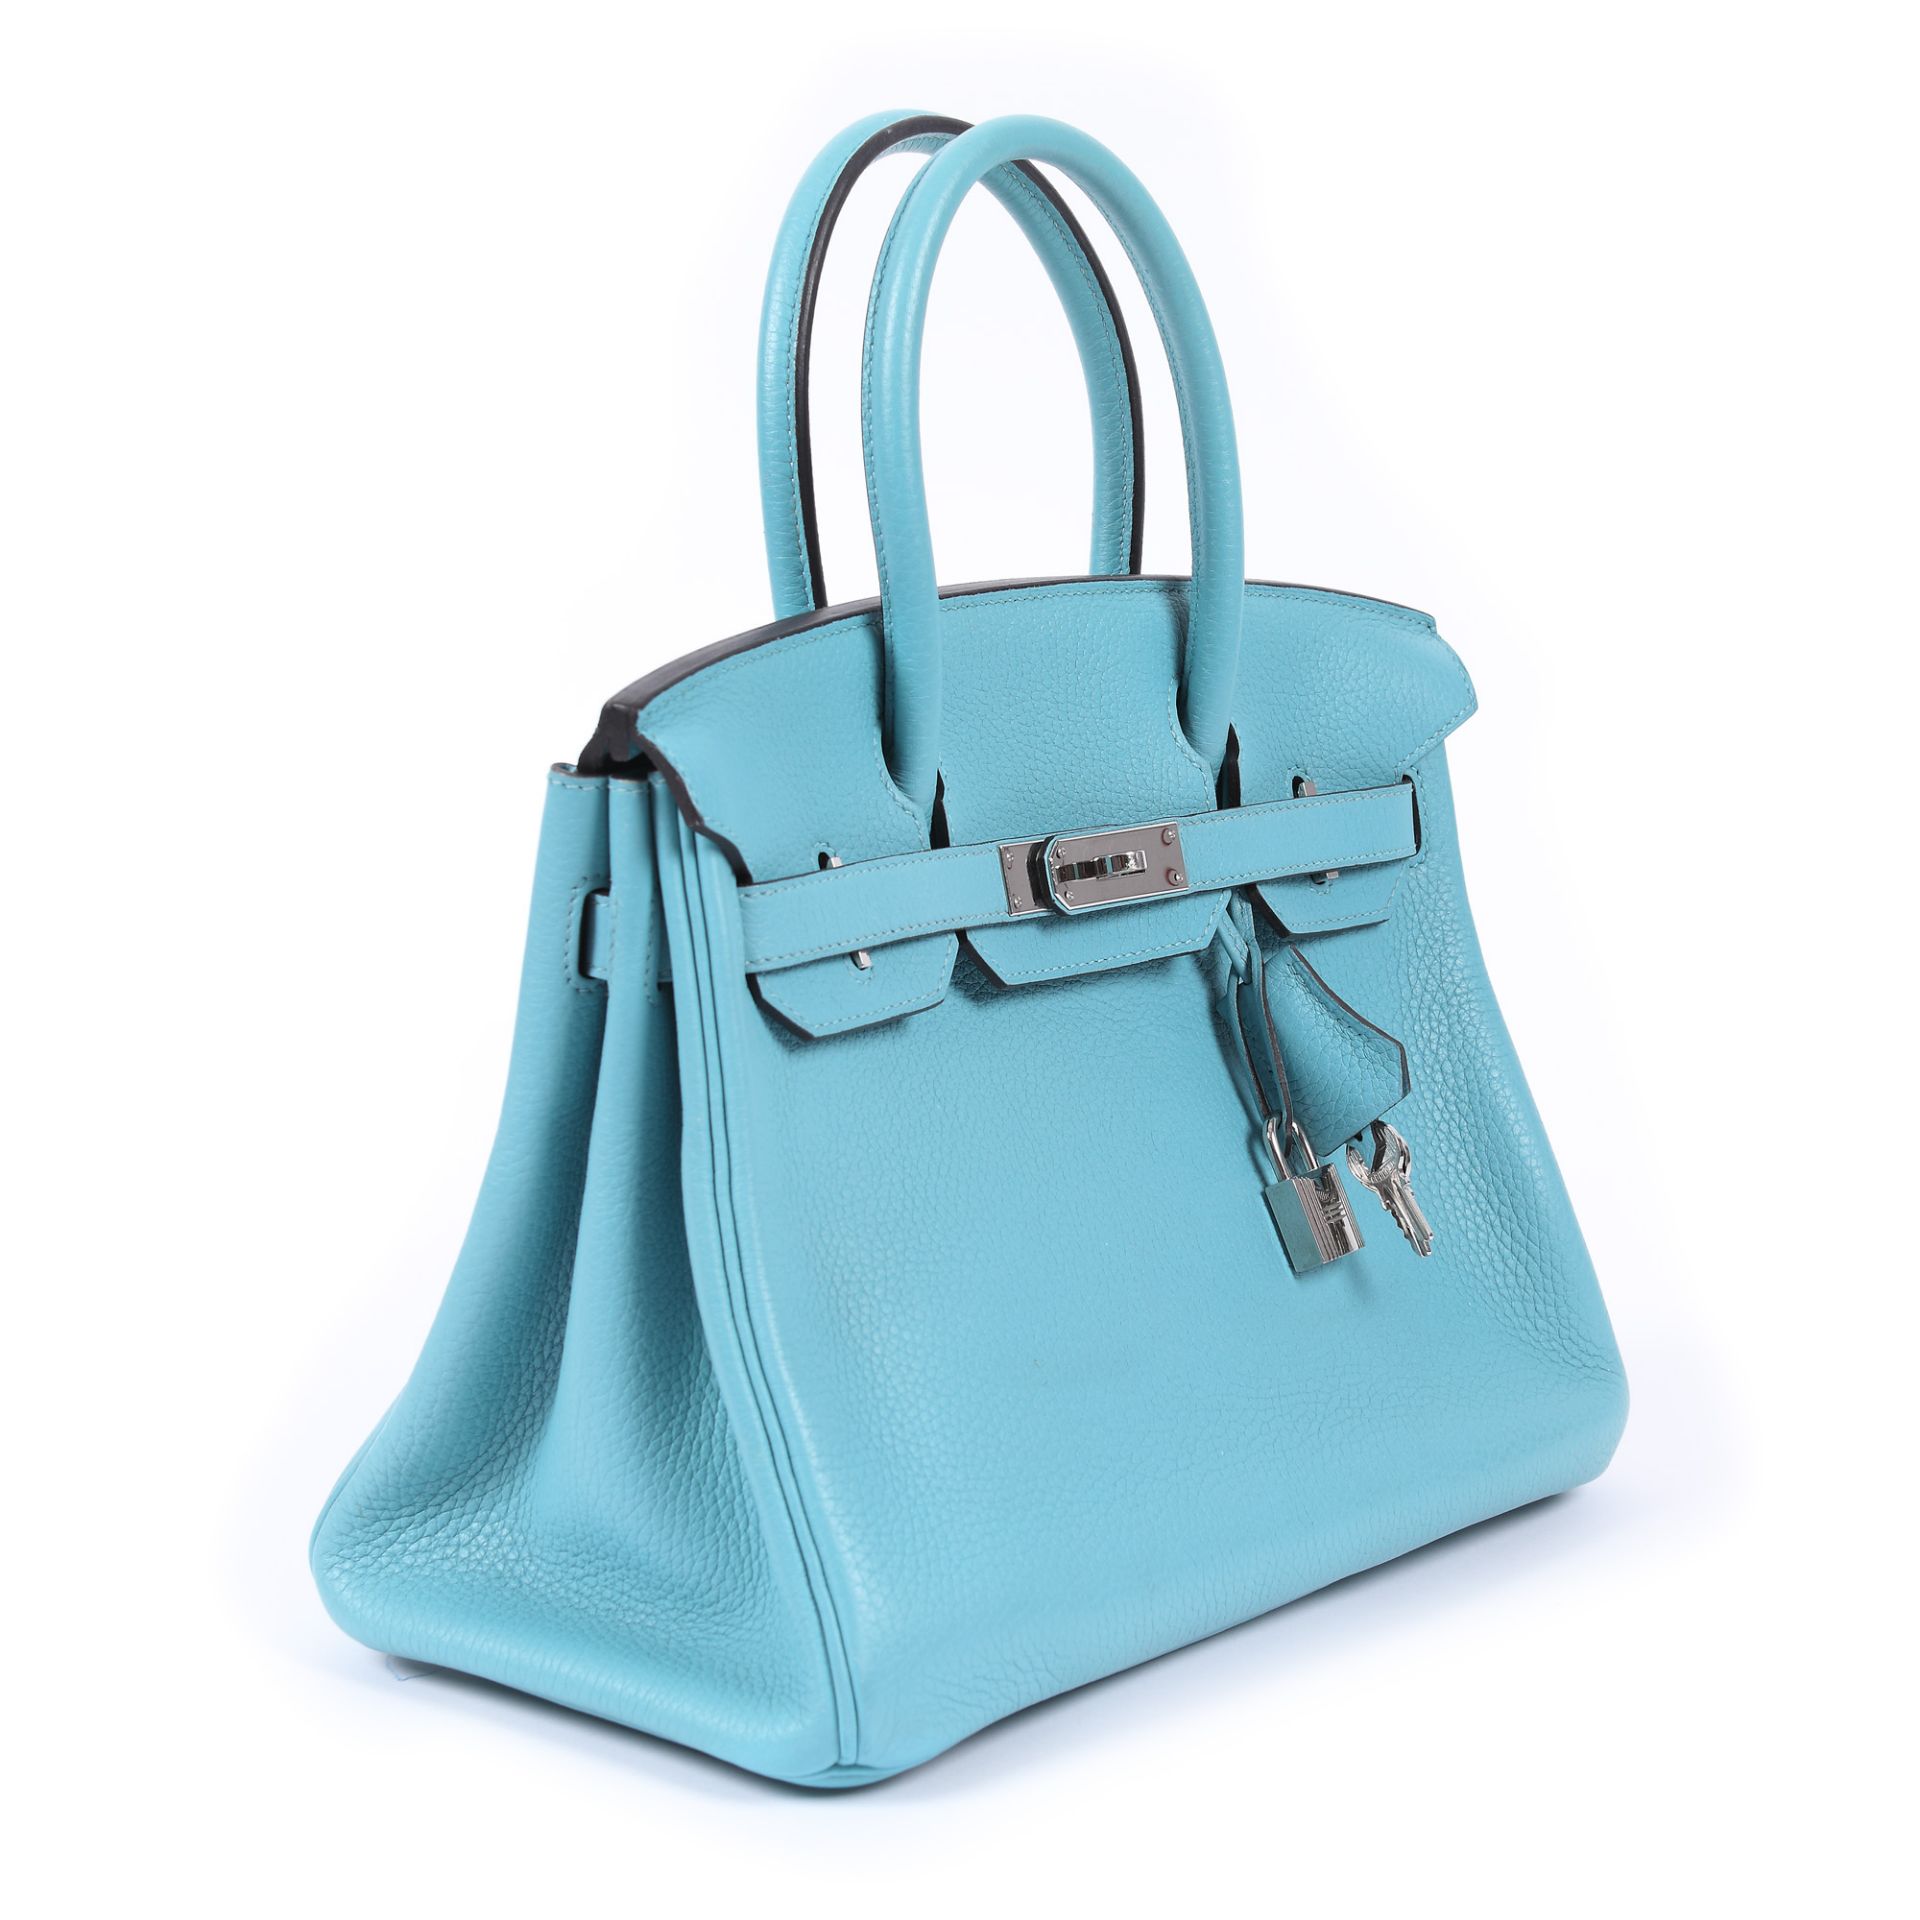 Hermès handbag, Birkin 30, Togo leather, Bleu du Nord colour - Image 4 of 9